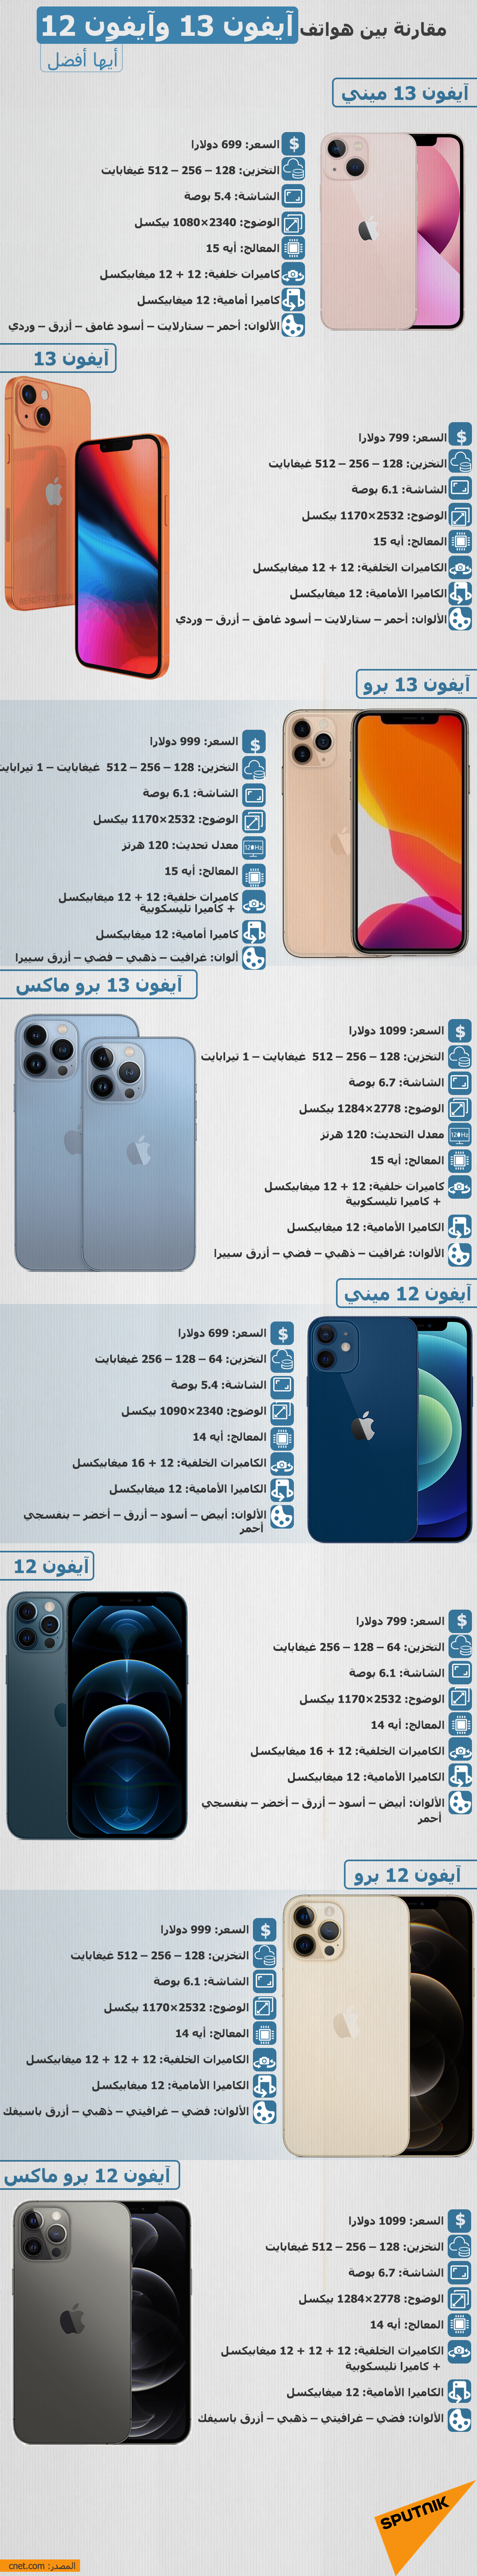 مقارنة بين هواتف آيفون 13 وآيفون 12... أيها أفضل - سبوتنيك عربي, 1920, 24.09.2021